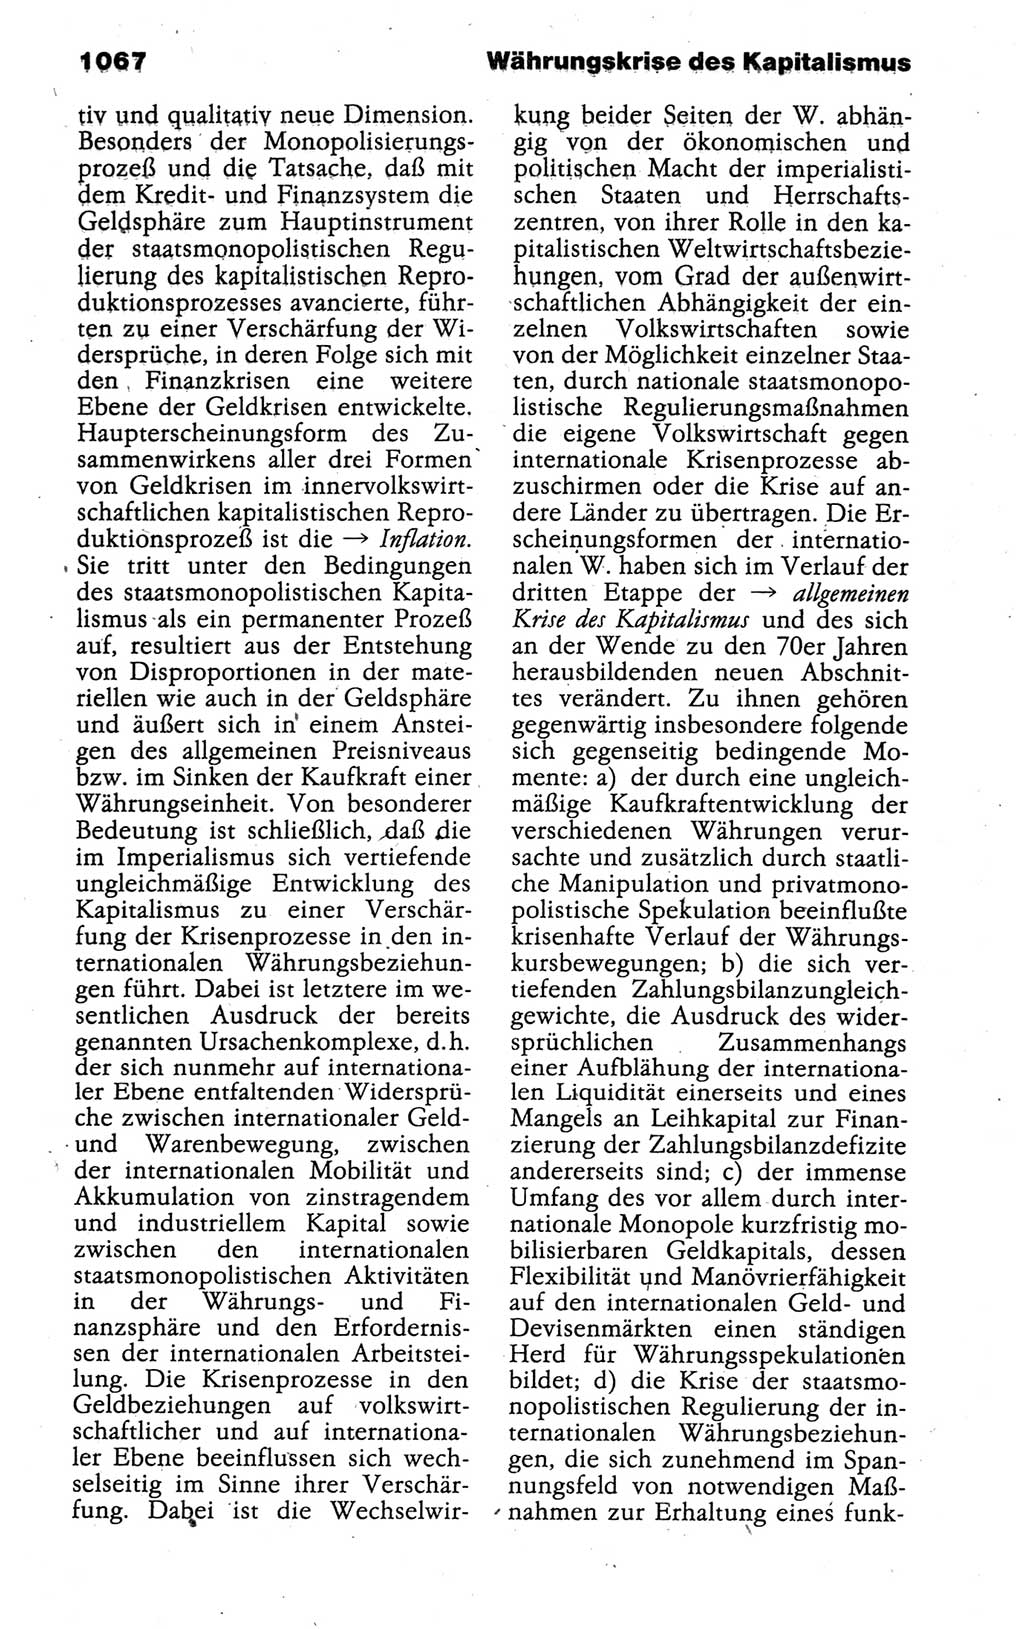 Kleines politisches Wörterbuch [Deutsche Demokratische Republik (DDR)] 1988, Seite 1067 (Kl. pol. Wb. DDR 1988, S. 1067)